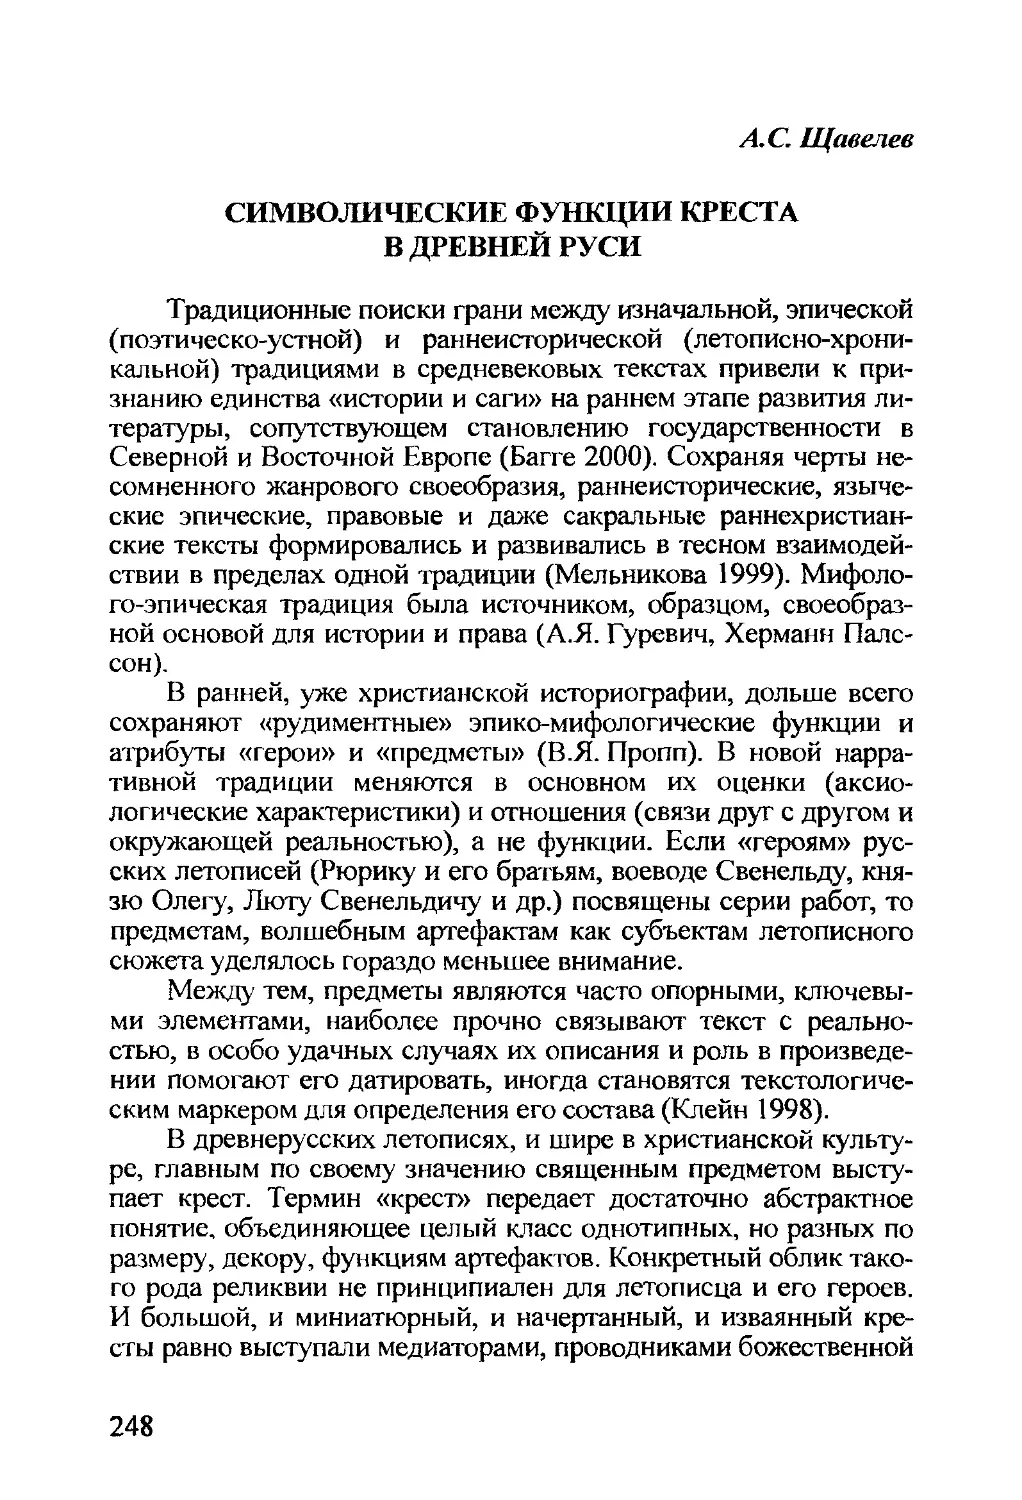 Щавелев А.С. Символические функции креста в Древней Руси